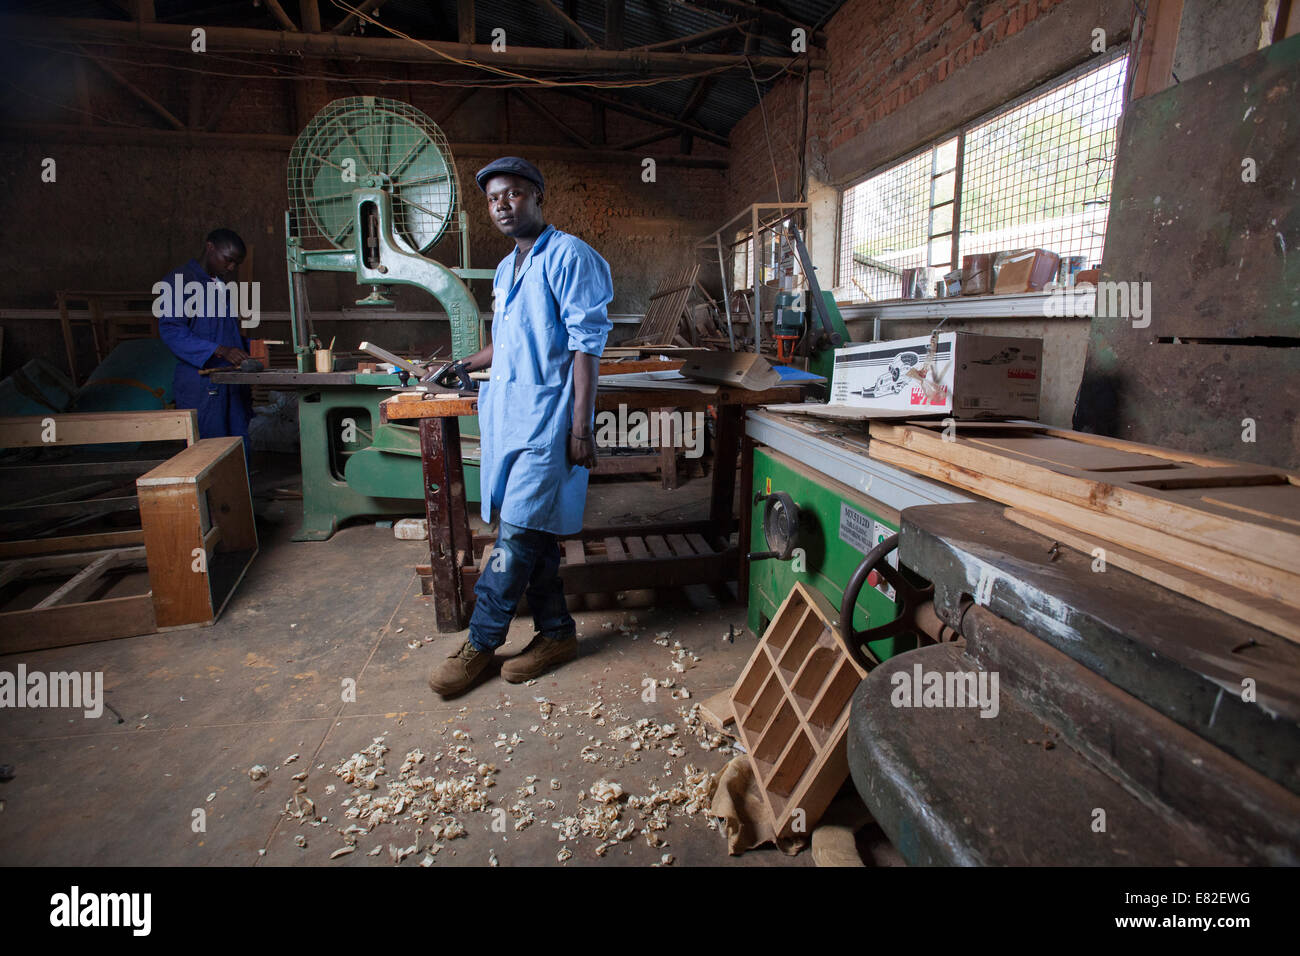 Dans son atelier de charpentier rwandais, Kigali, Rwanda. Banque D'Images